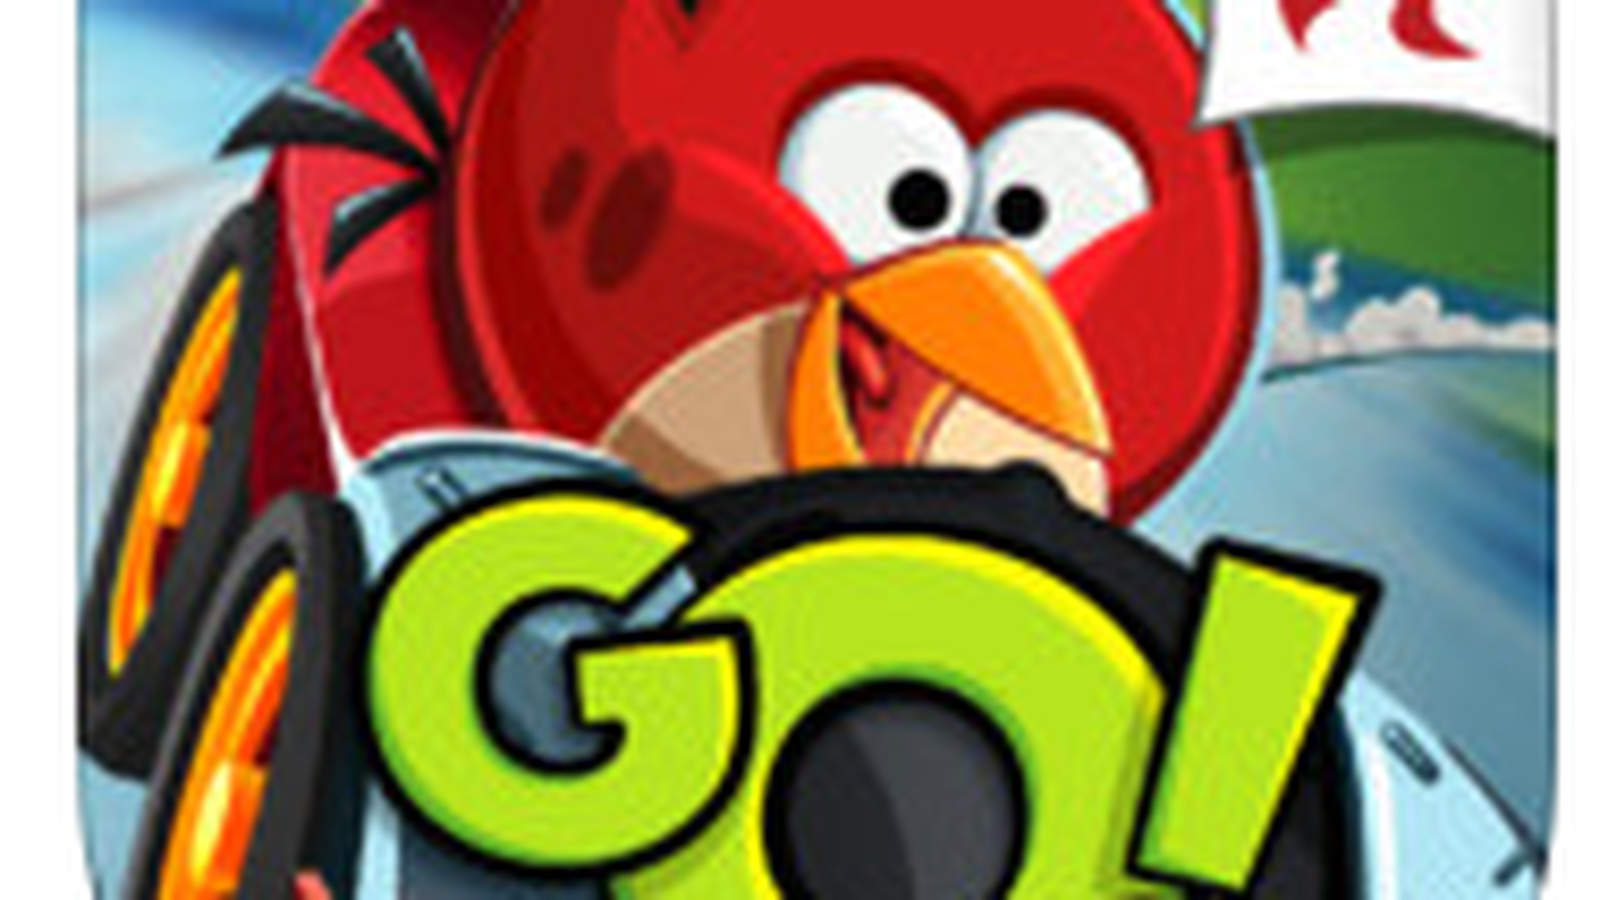 Rovio's 'Angry Birds Go!' Kart Racing Game Hits the App Store - MacRumors